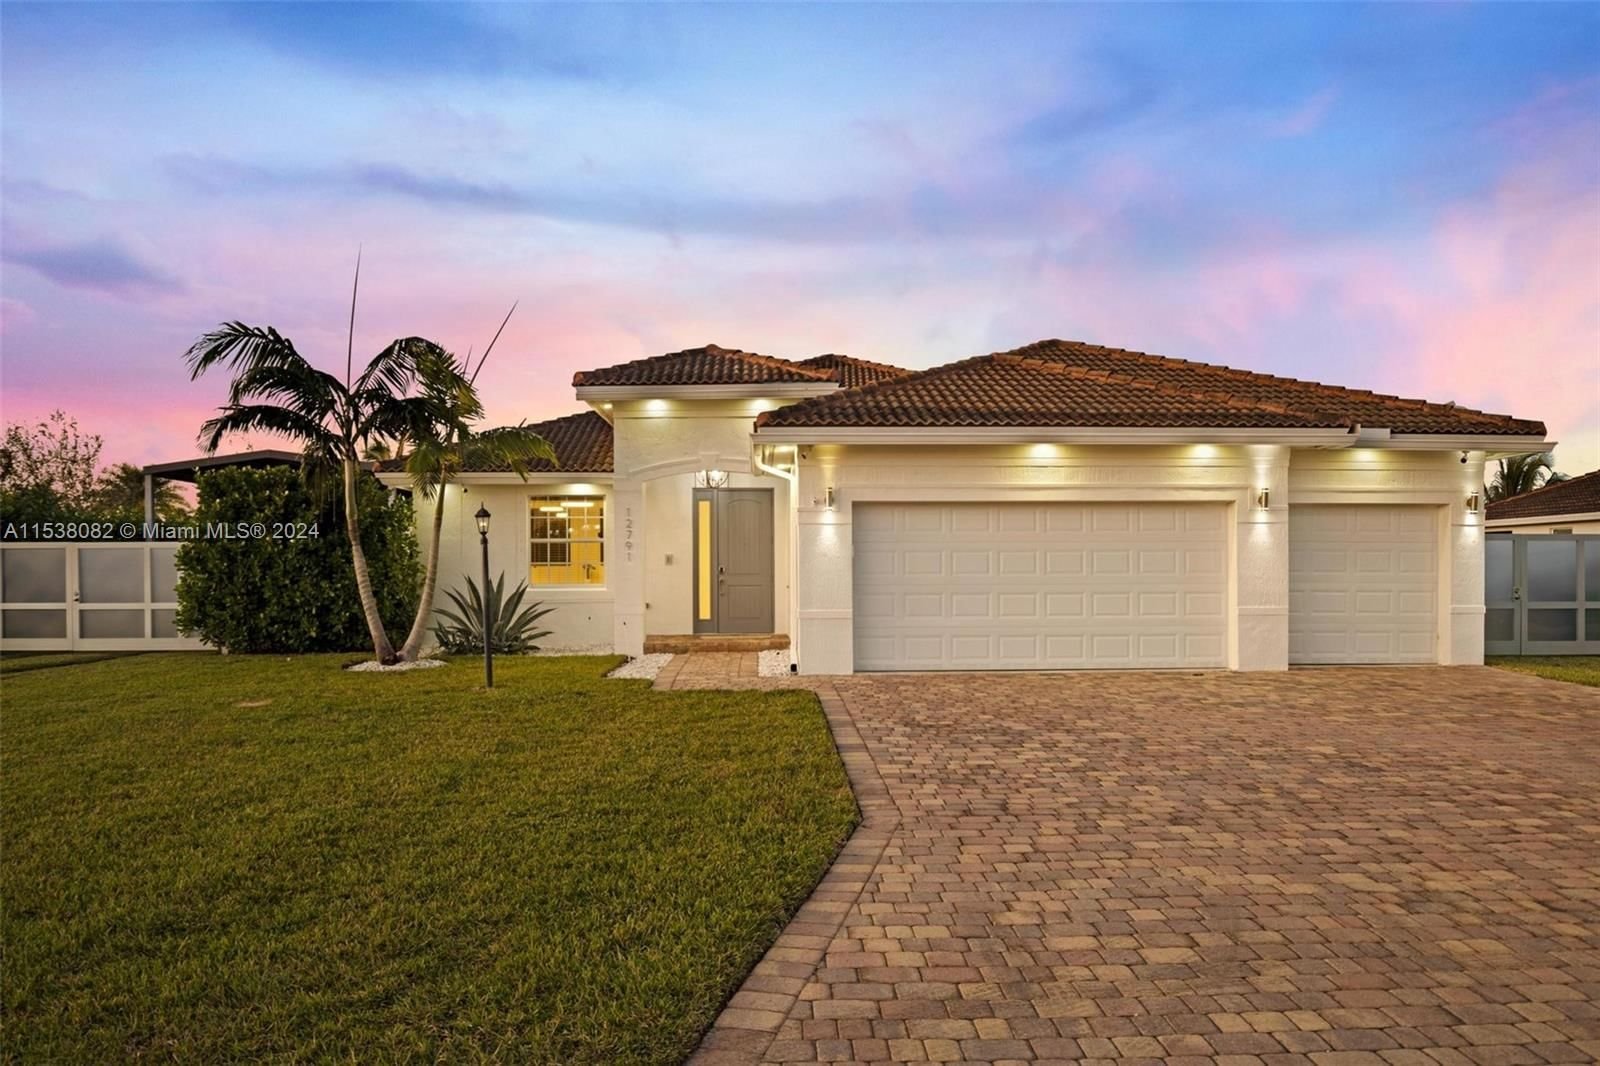 Real estate property located at 12791 228th St, Miami-Dade County, BONITA ESTATES MANSIONS S, Miami, FL